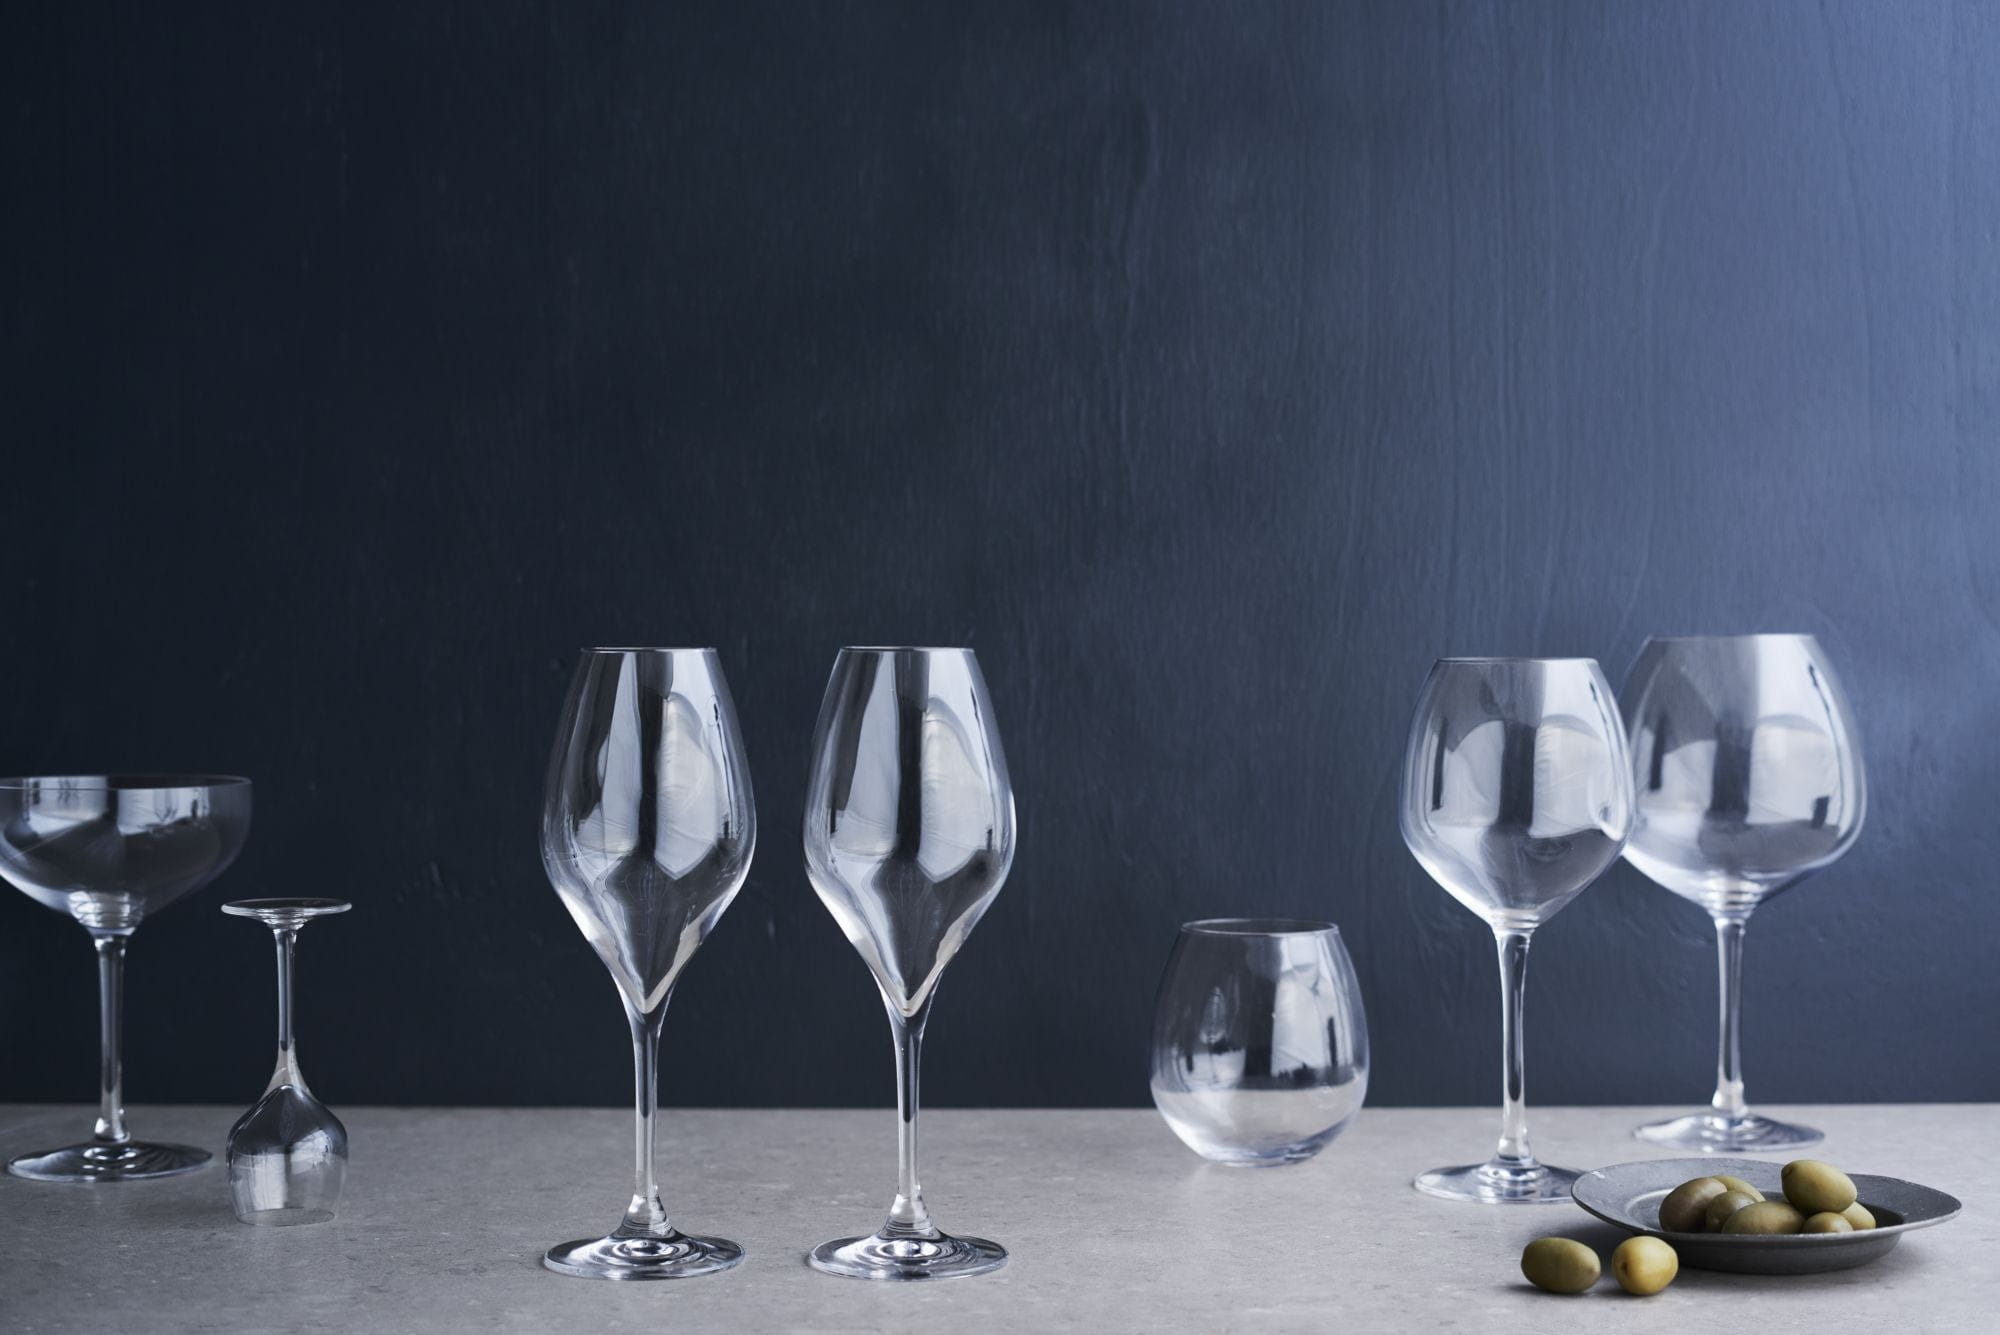 Rosendahl Premium Champagne Glass -sæt på 2 370 ml, klart